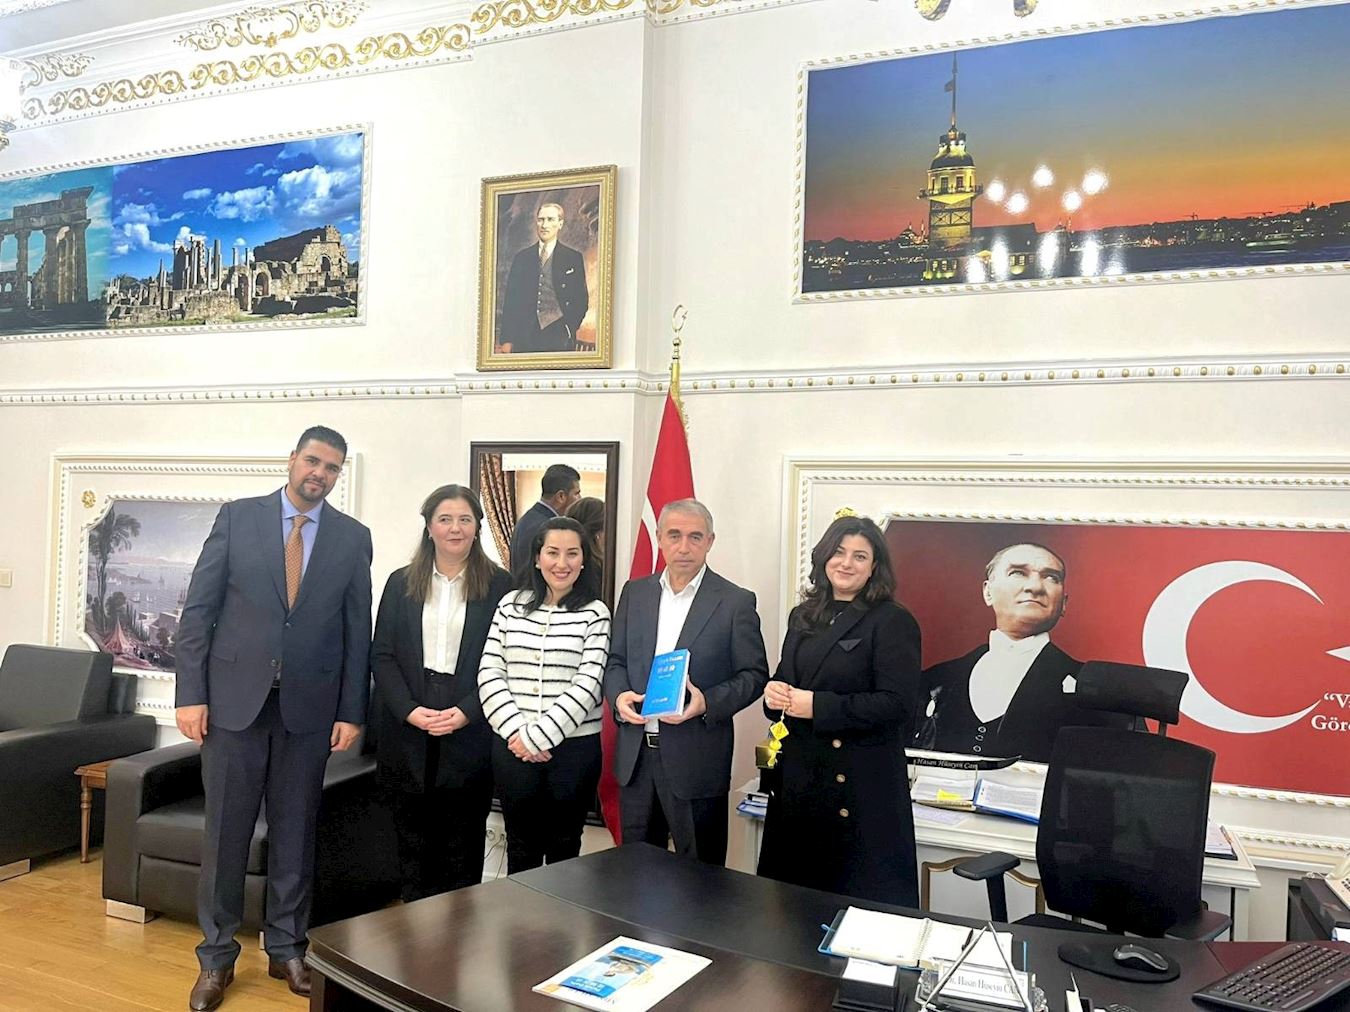 '图2：学员向伊斯坦布尔副省长哈桑·侯赛因·詹博士赠送法轮功主要著作——《转法轮》。'